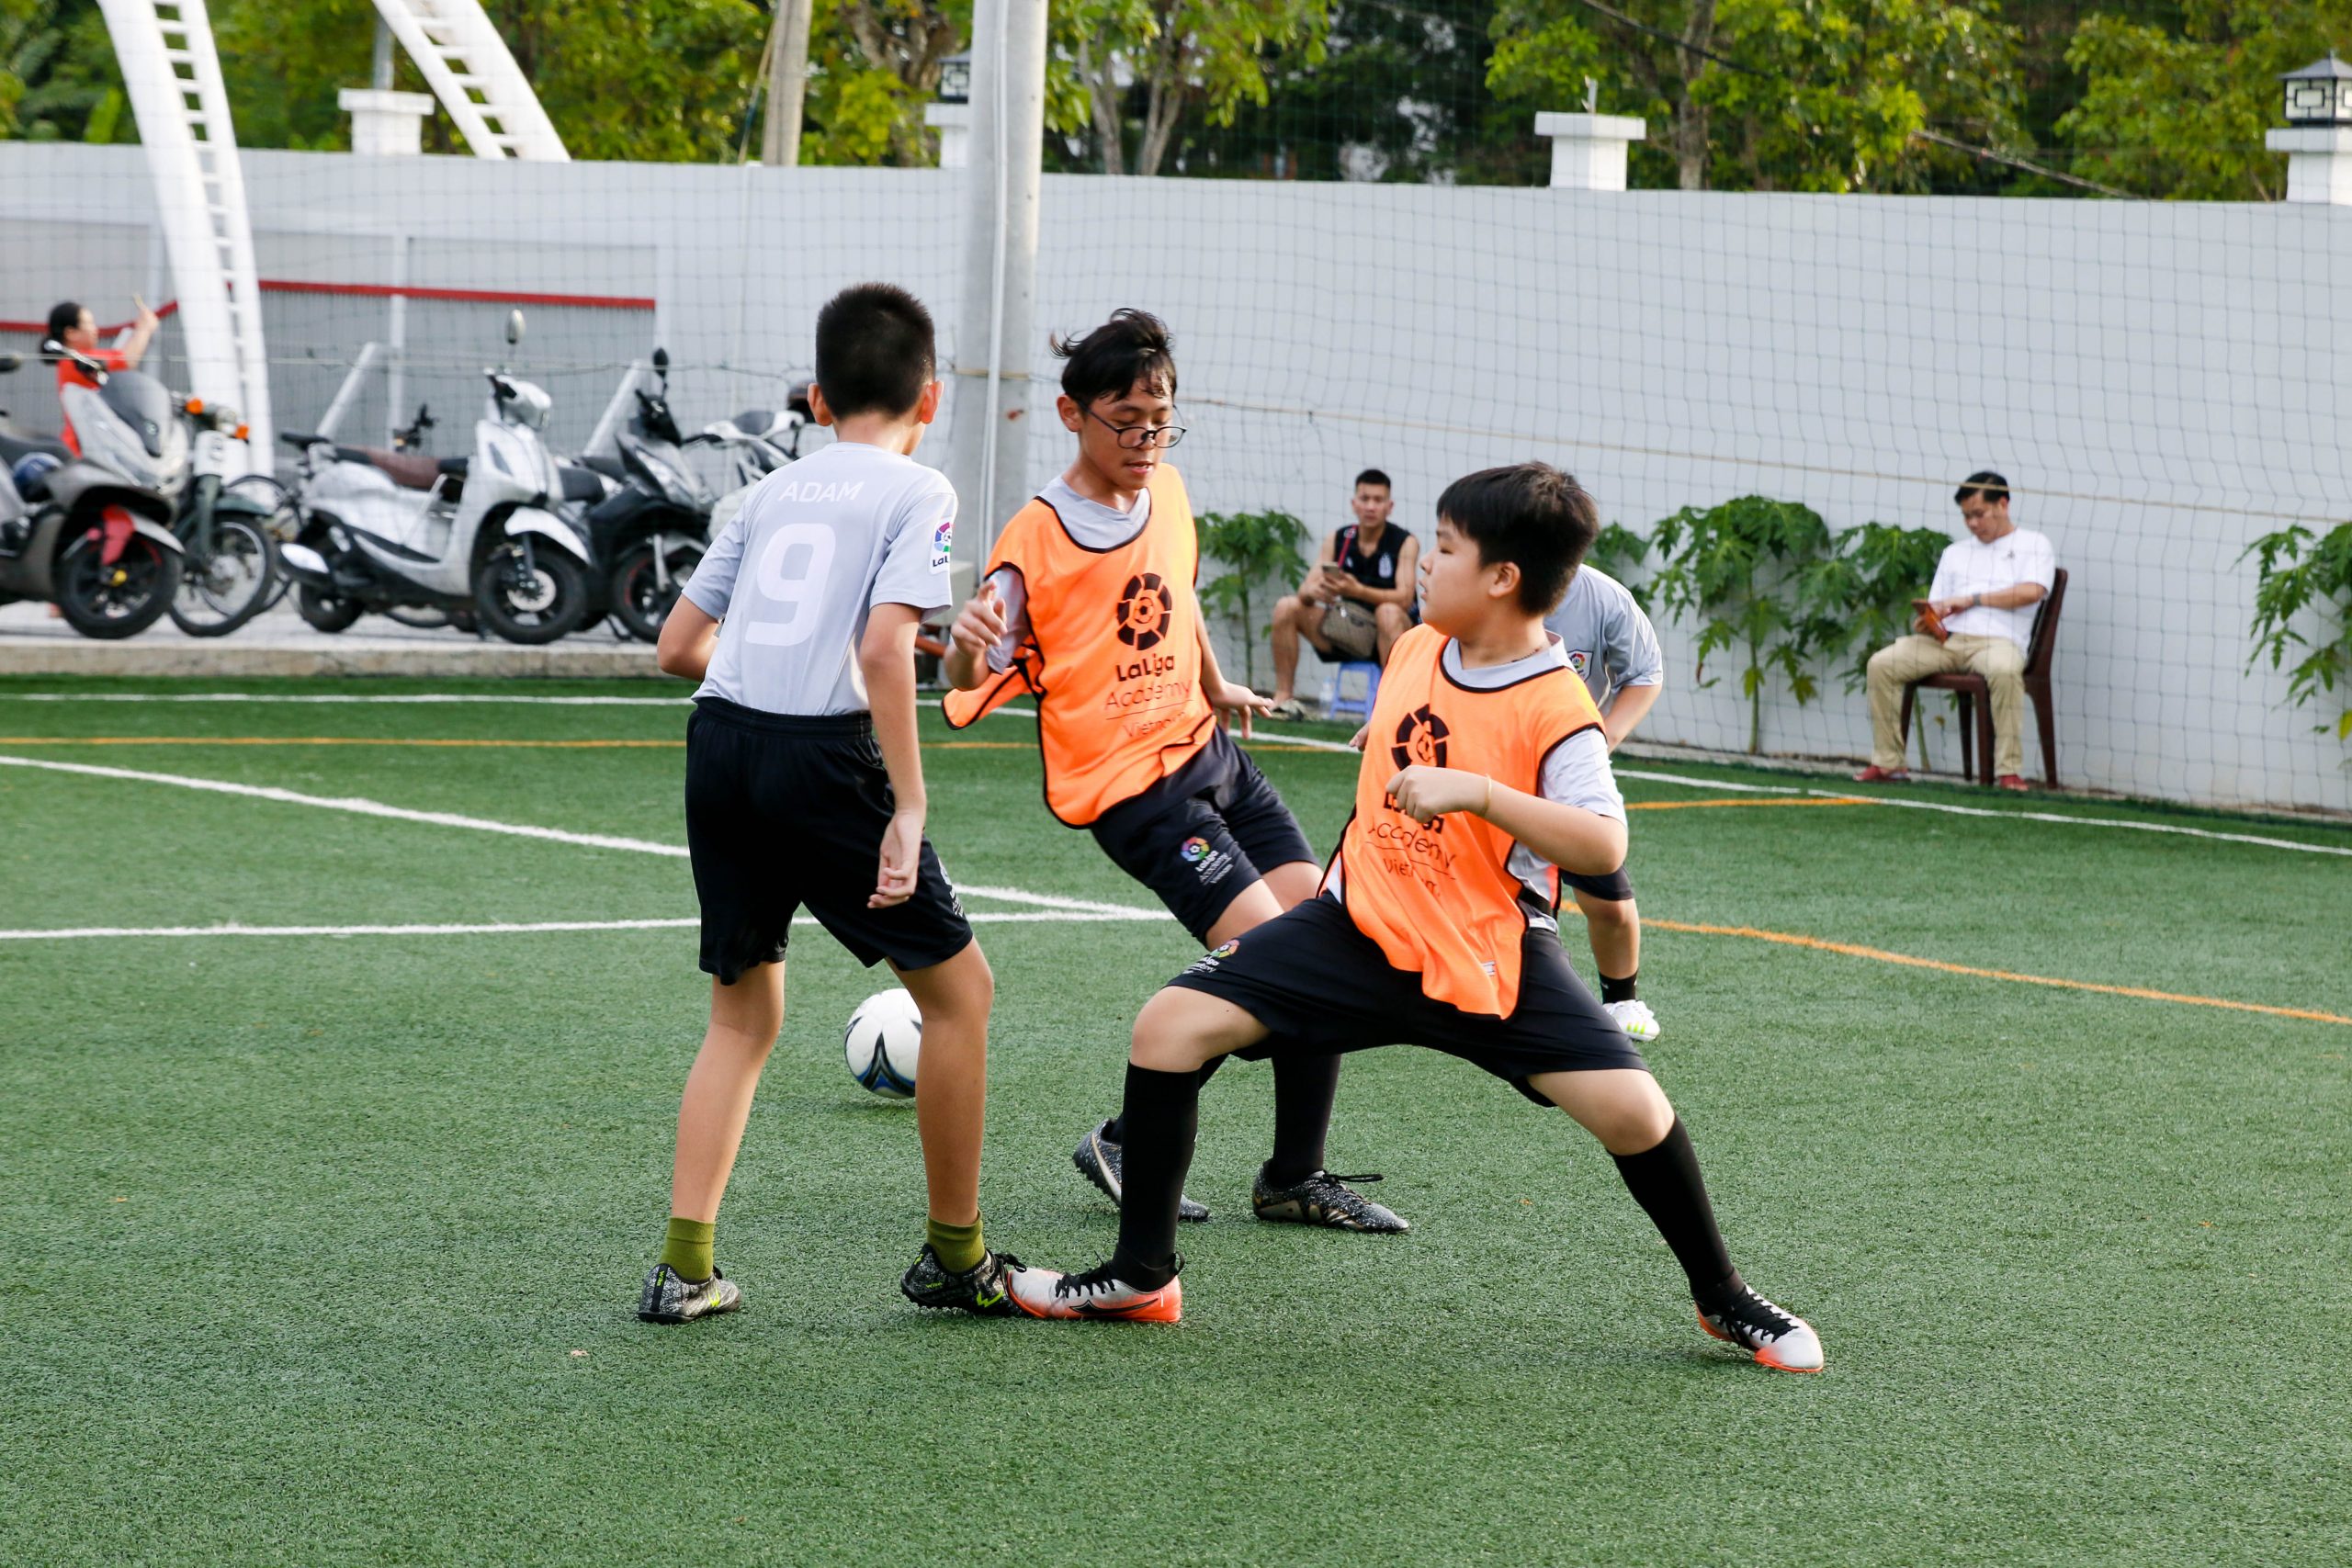 IMG 9913 1 scaled | Laliga Việt Nam - Ươm mầm tài năng bóng đá trẻ